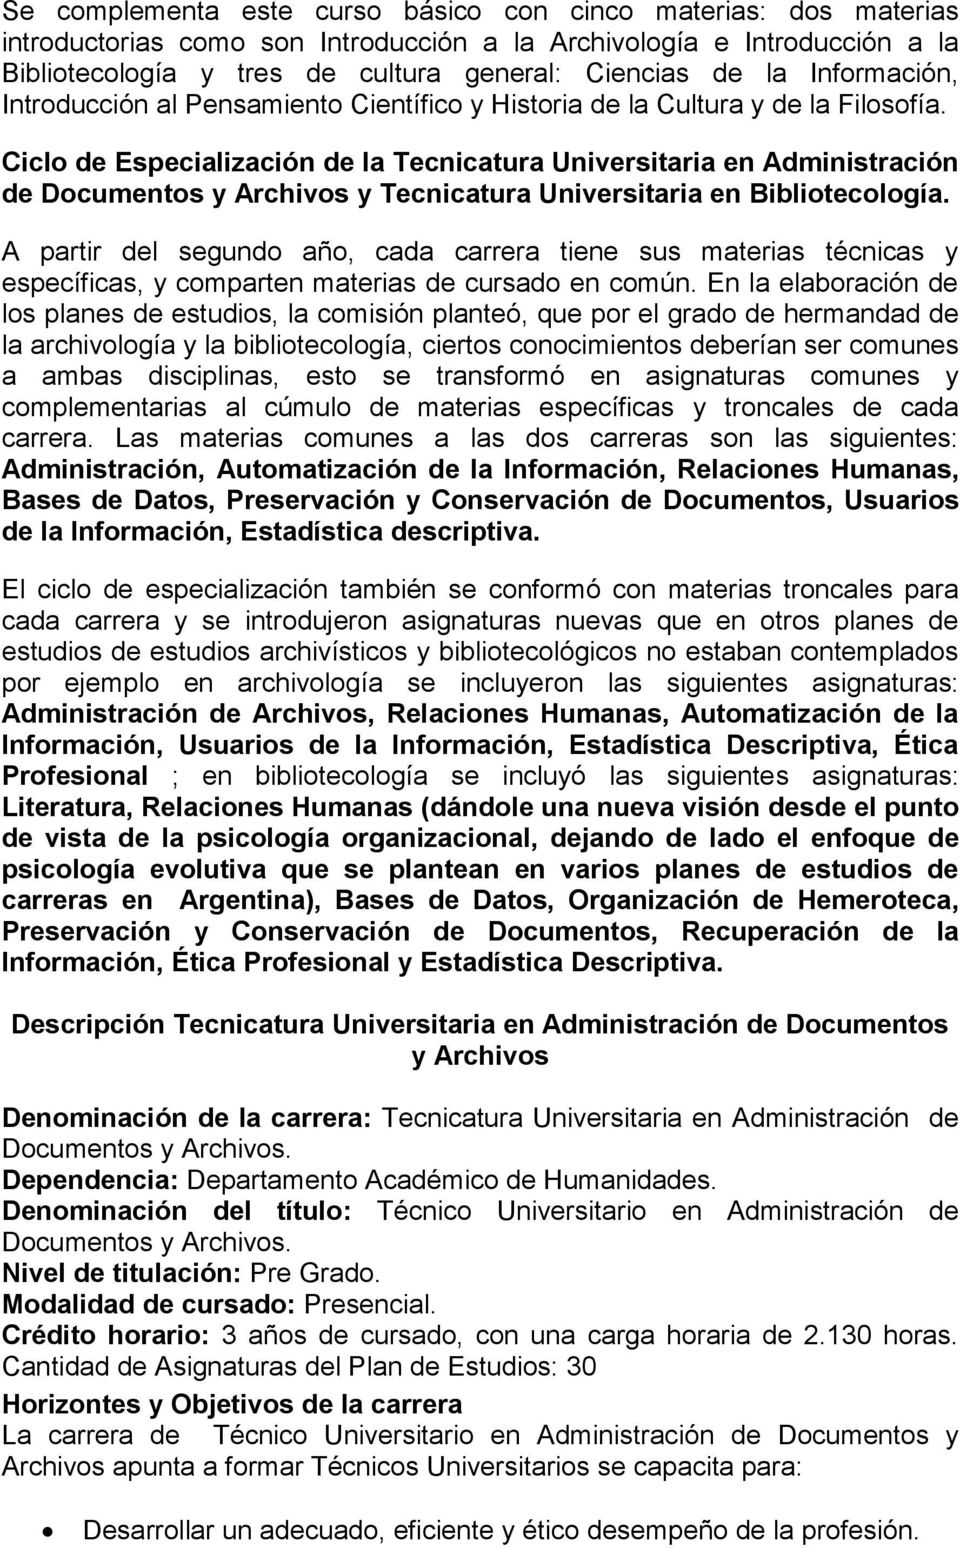 Ciclo de Especialización de la Tecnicatura Universitaria en Administración de Documentos y Archivos y Tecnicatura Universitaria en Bibliotecología.